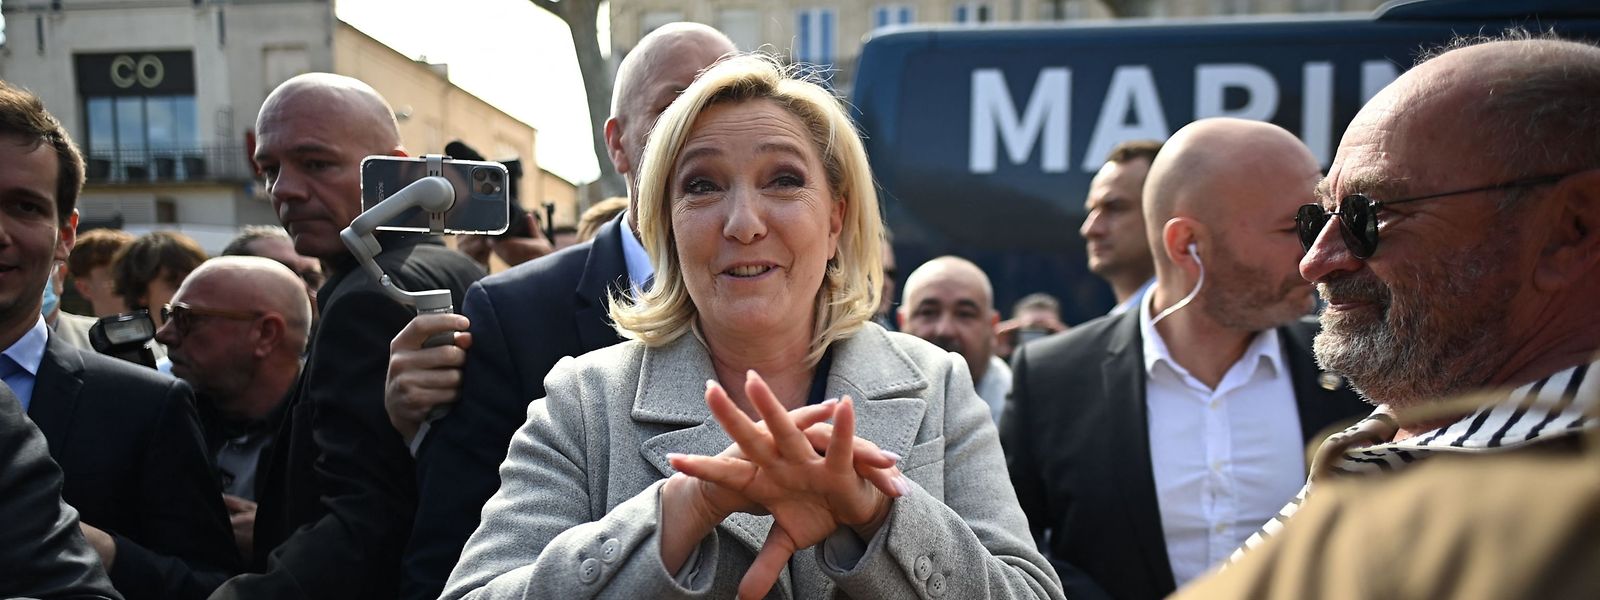 La candidate populiste de droite Marine Le Pen se montre sous son jour le plus charmant.